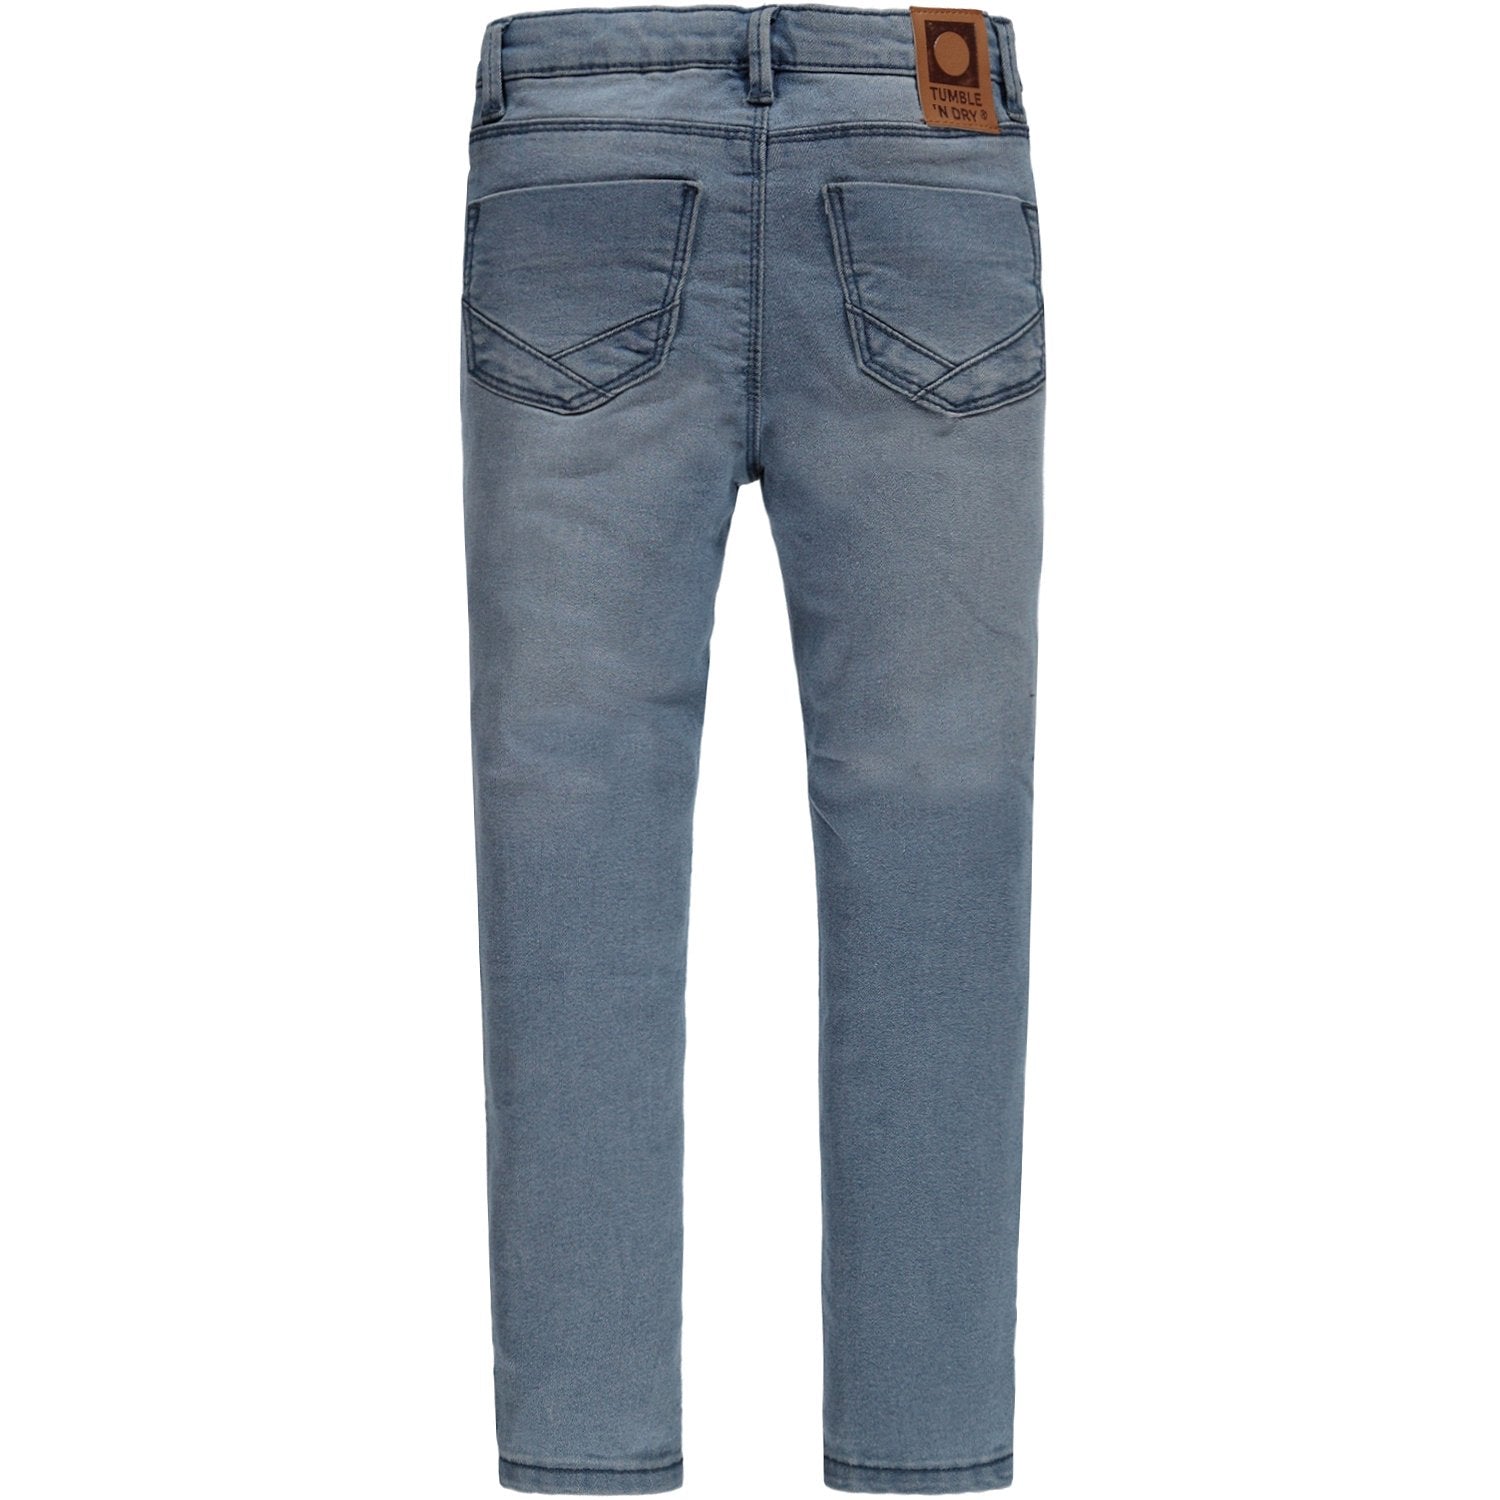 Meisjes Broek Jeans lang van Tumble 'n Dry in de kleur Denim mid blue in maat 140.